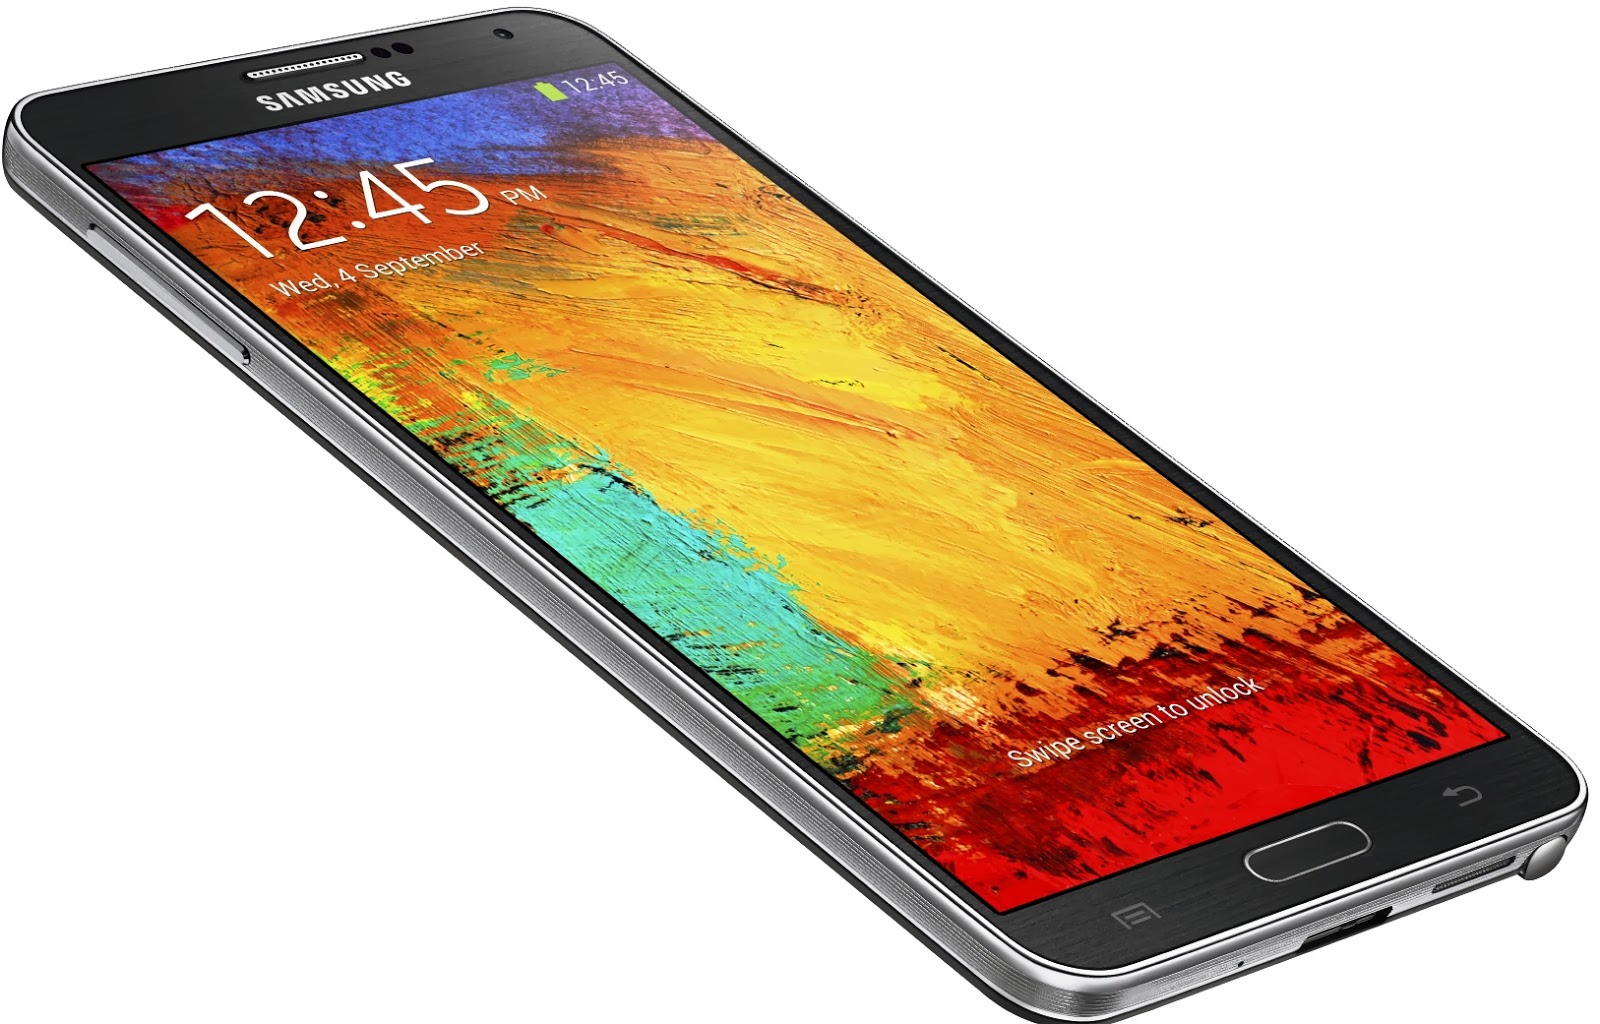 Harga Hp Samsung Terbaru Murah Agustus 2015